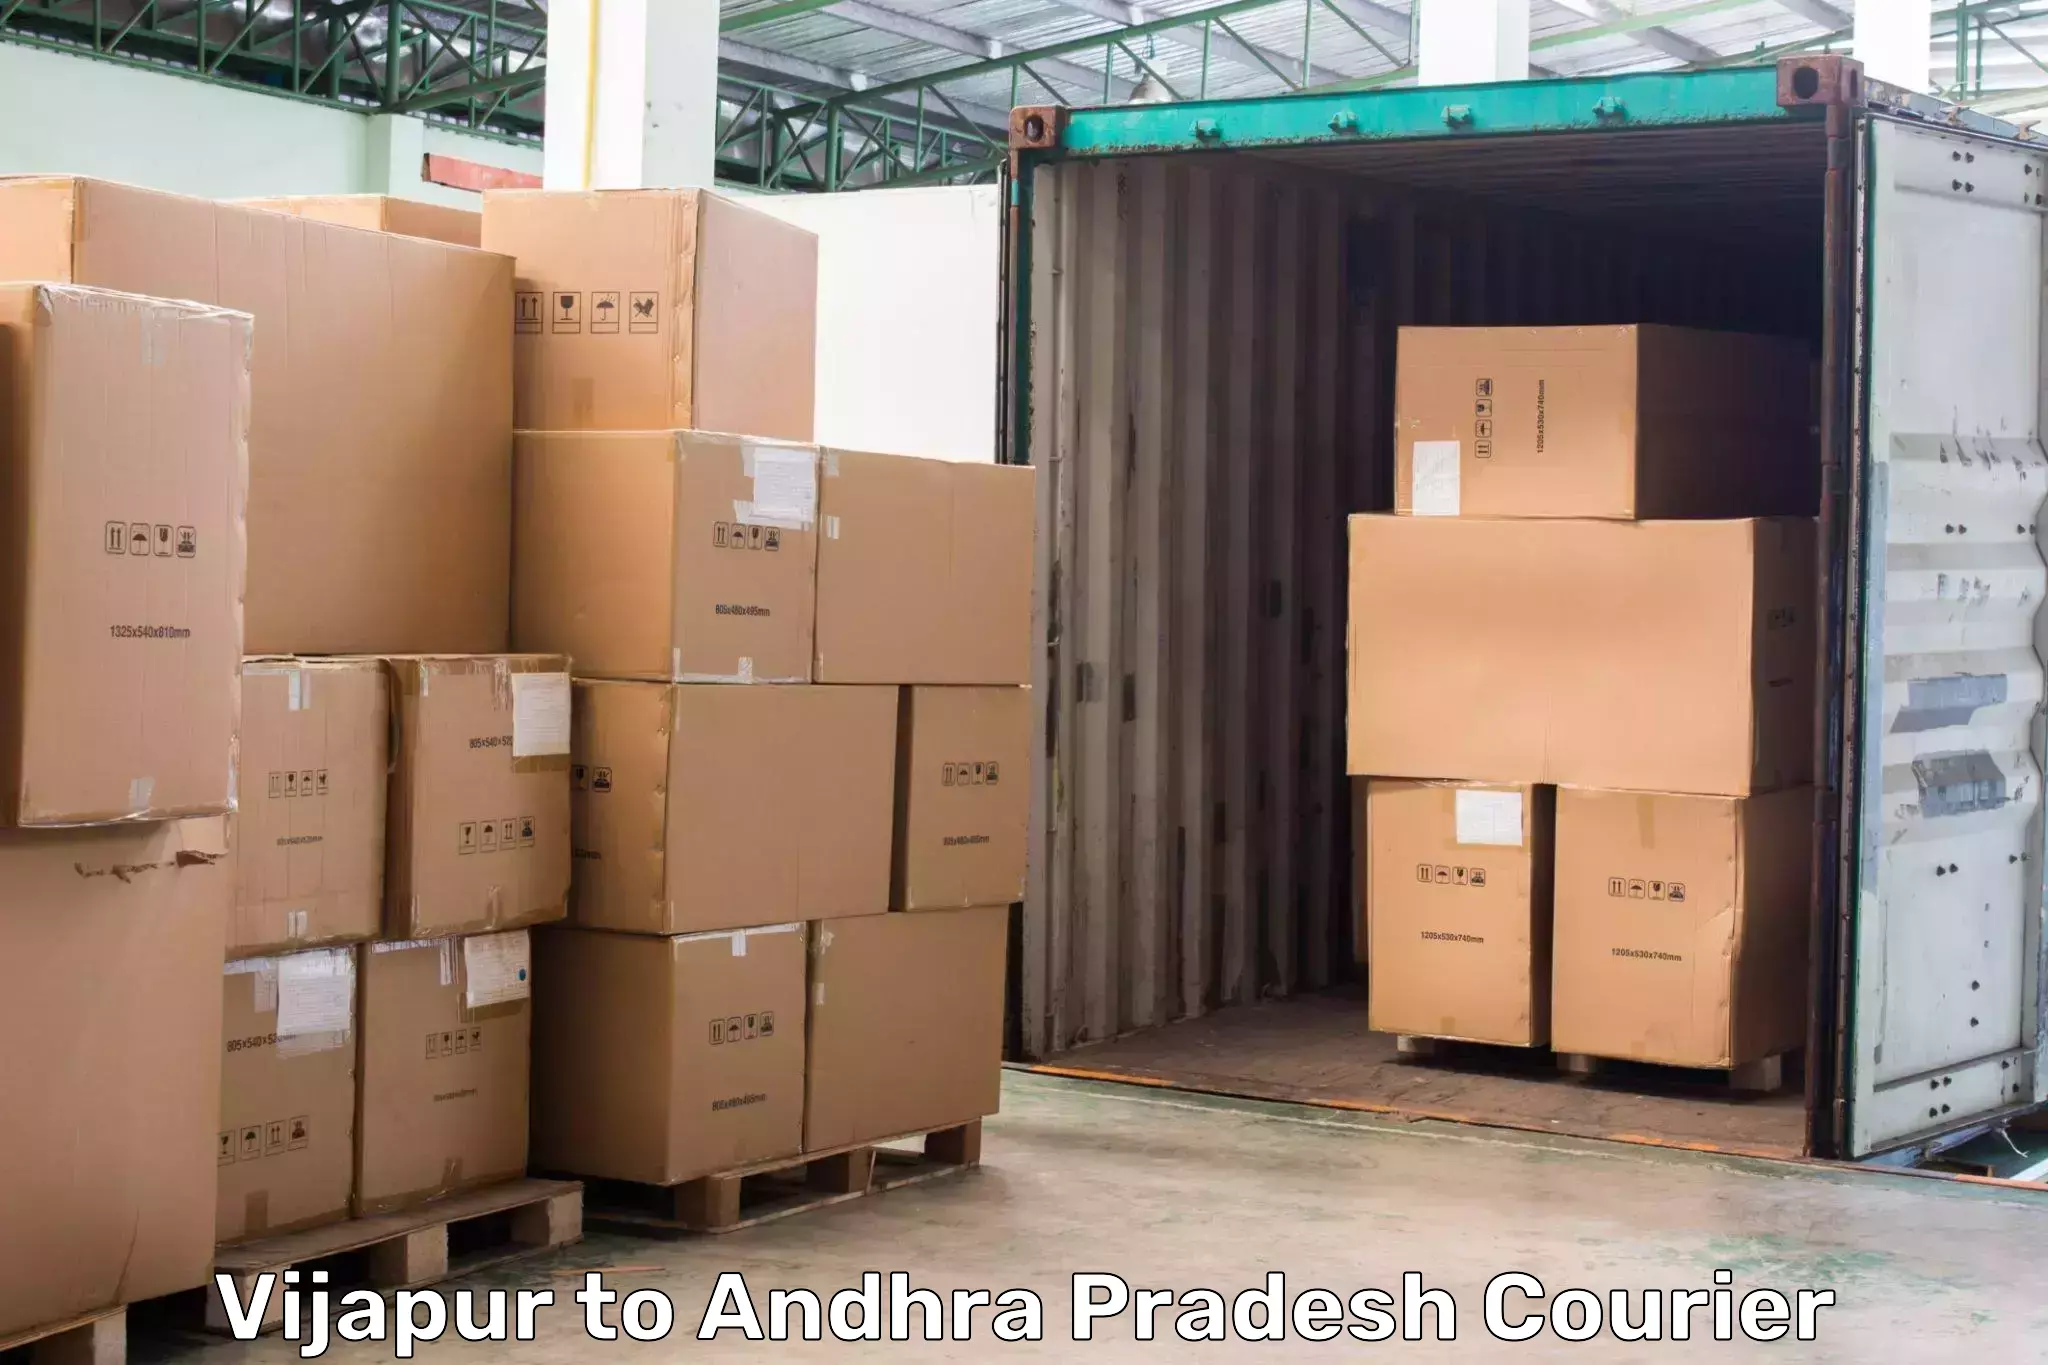 Nationwide delivery network Vijapur to Galiveedu